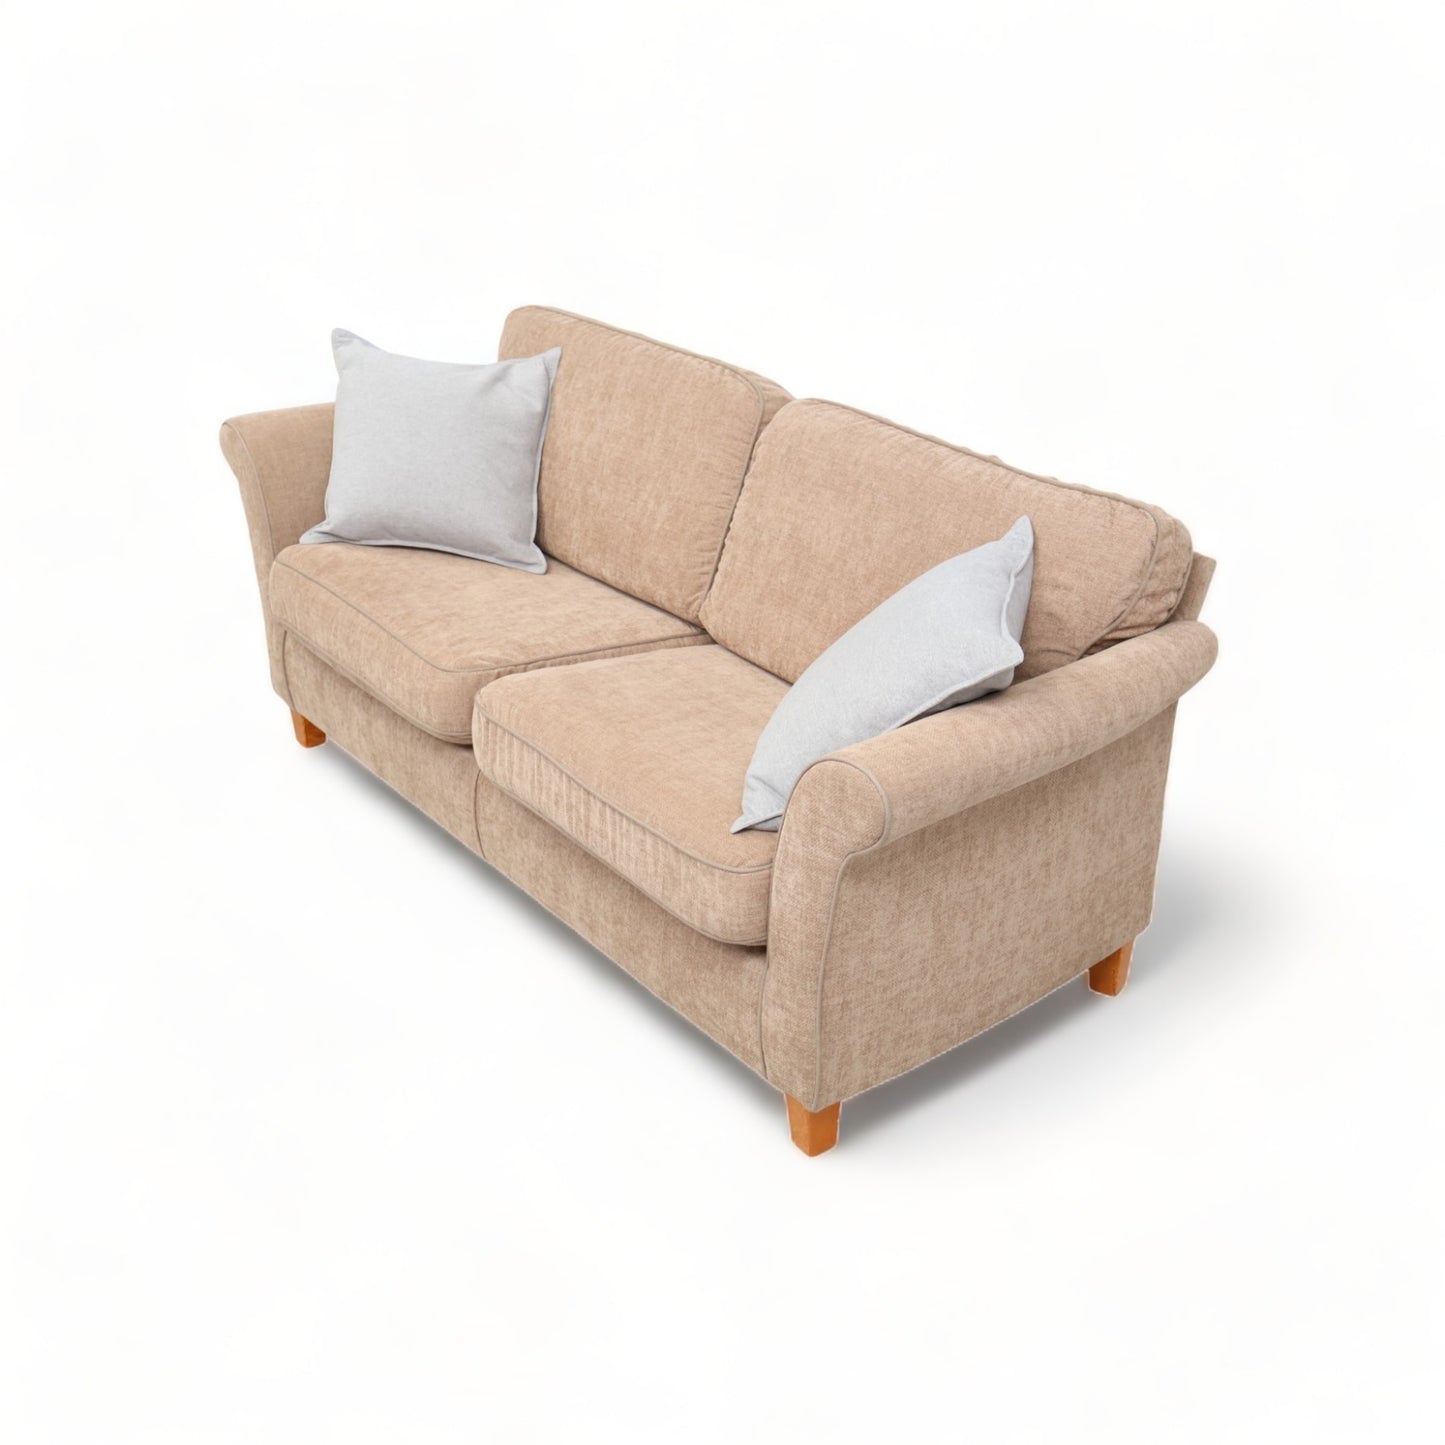 Nyrenset | Brun 2-seter sofa med avtagbare trekk